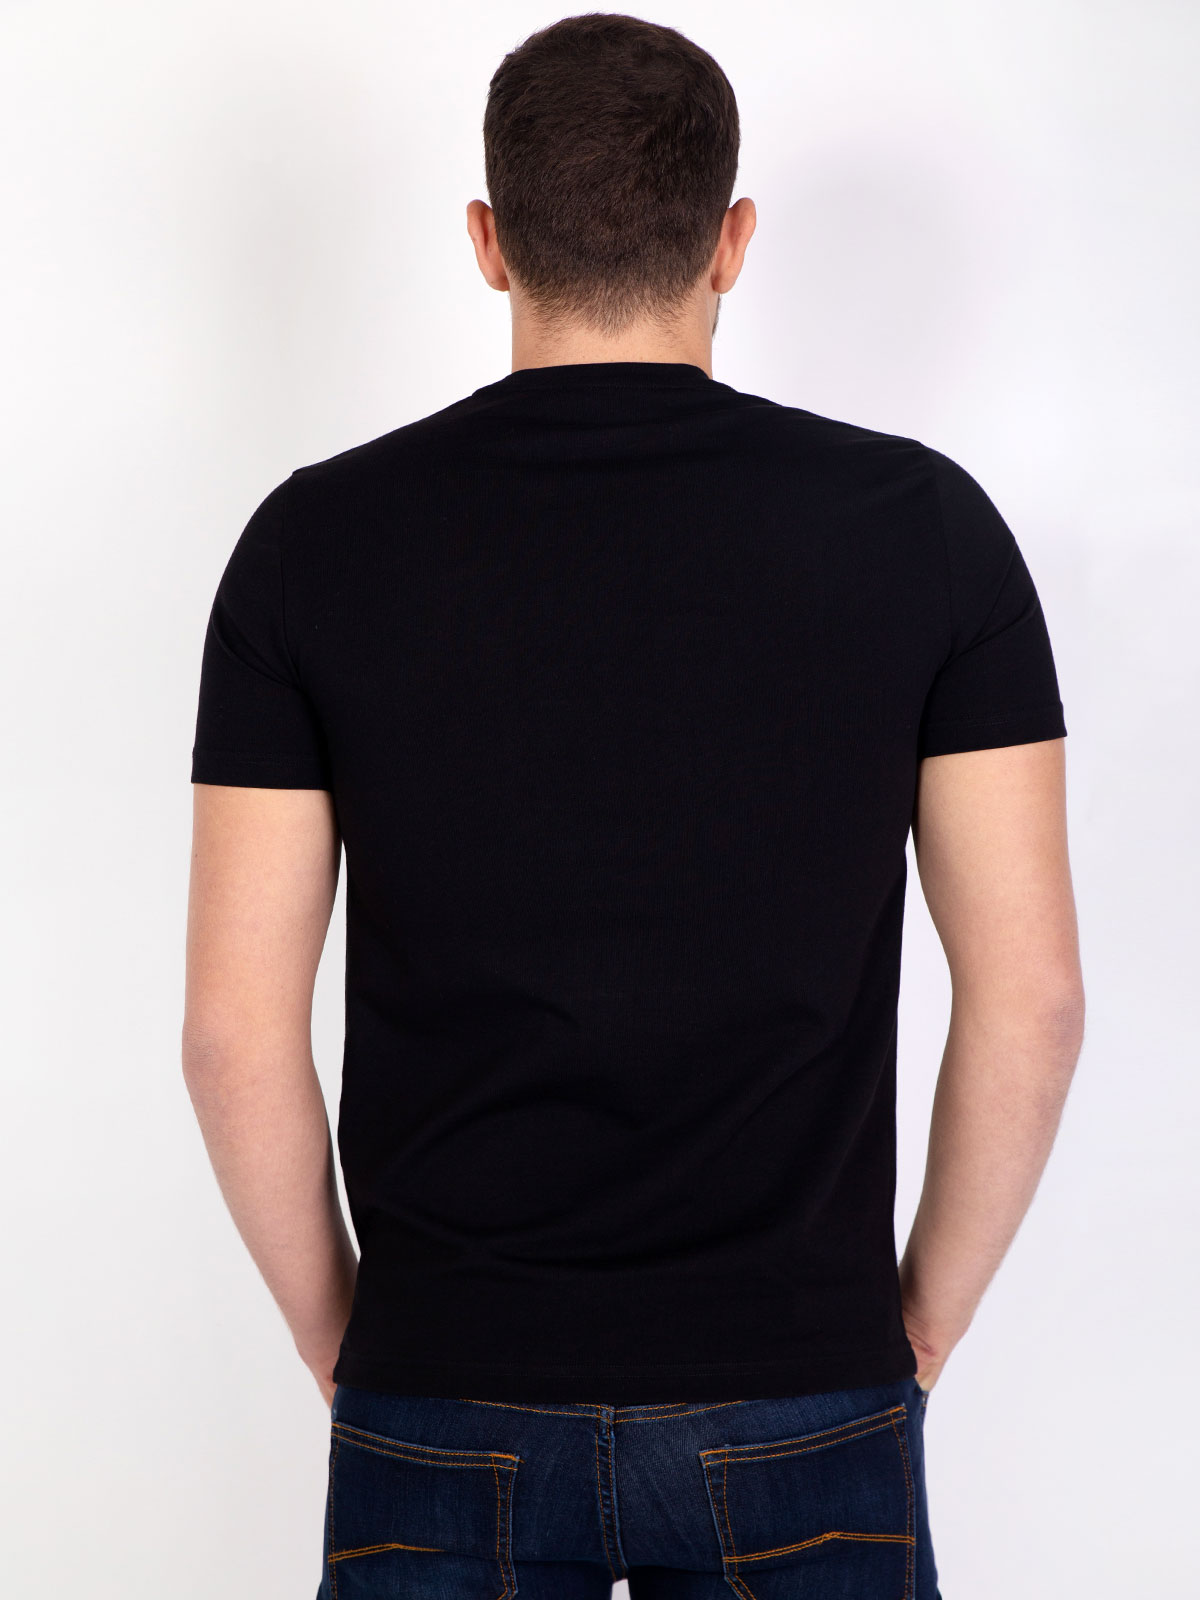 Μαύρη κοντομάνικη μπλούζα με σήμα - 96386 € 11.81 img4